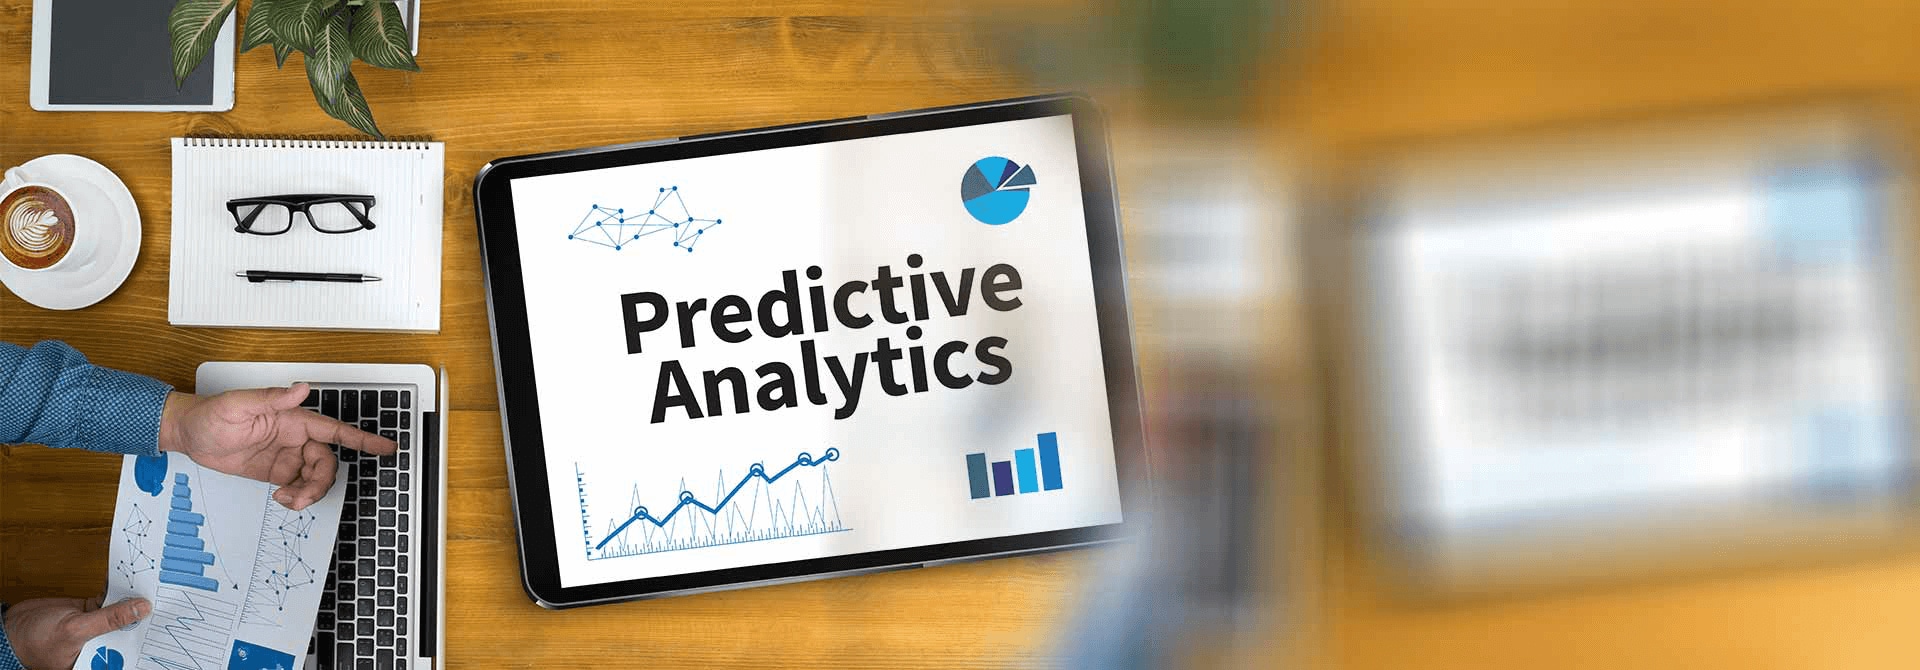 Predictive-Analytics-460495-1